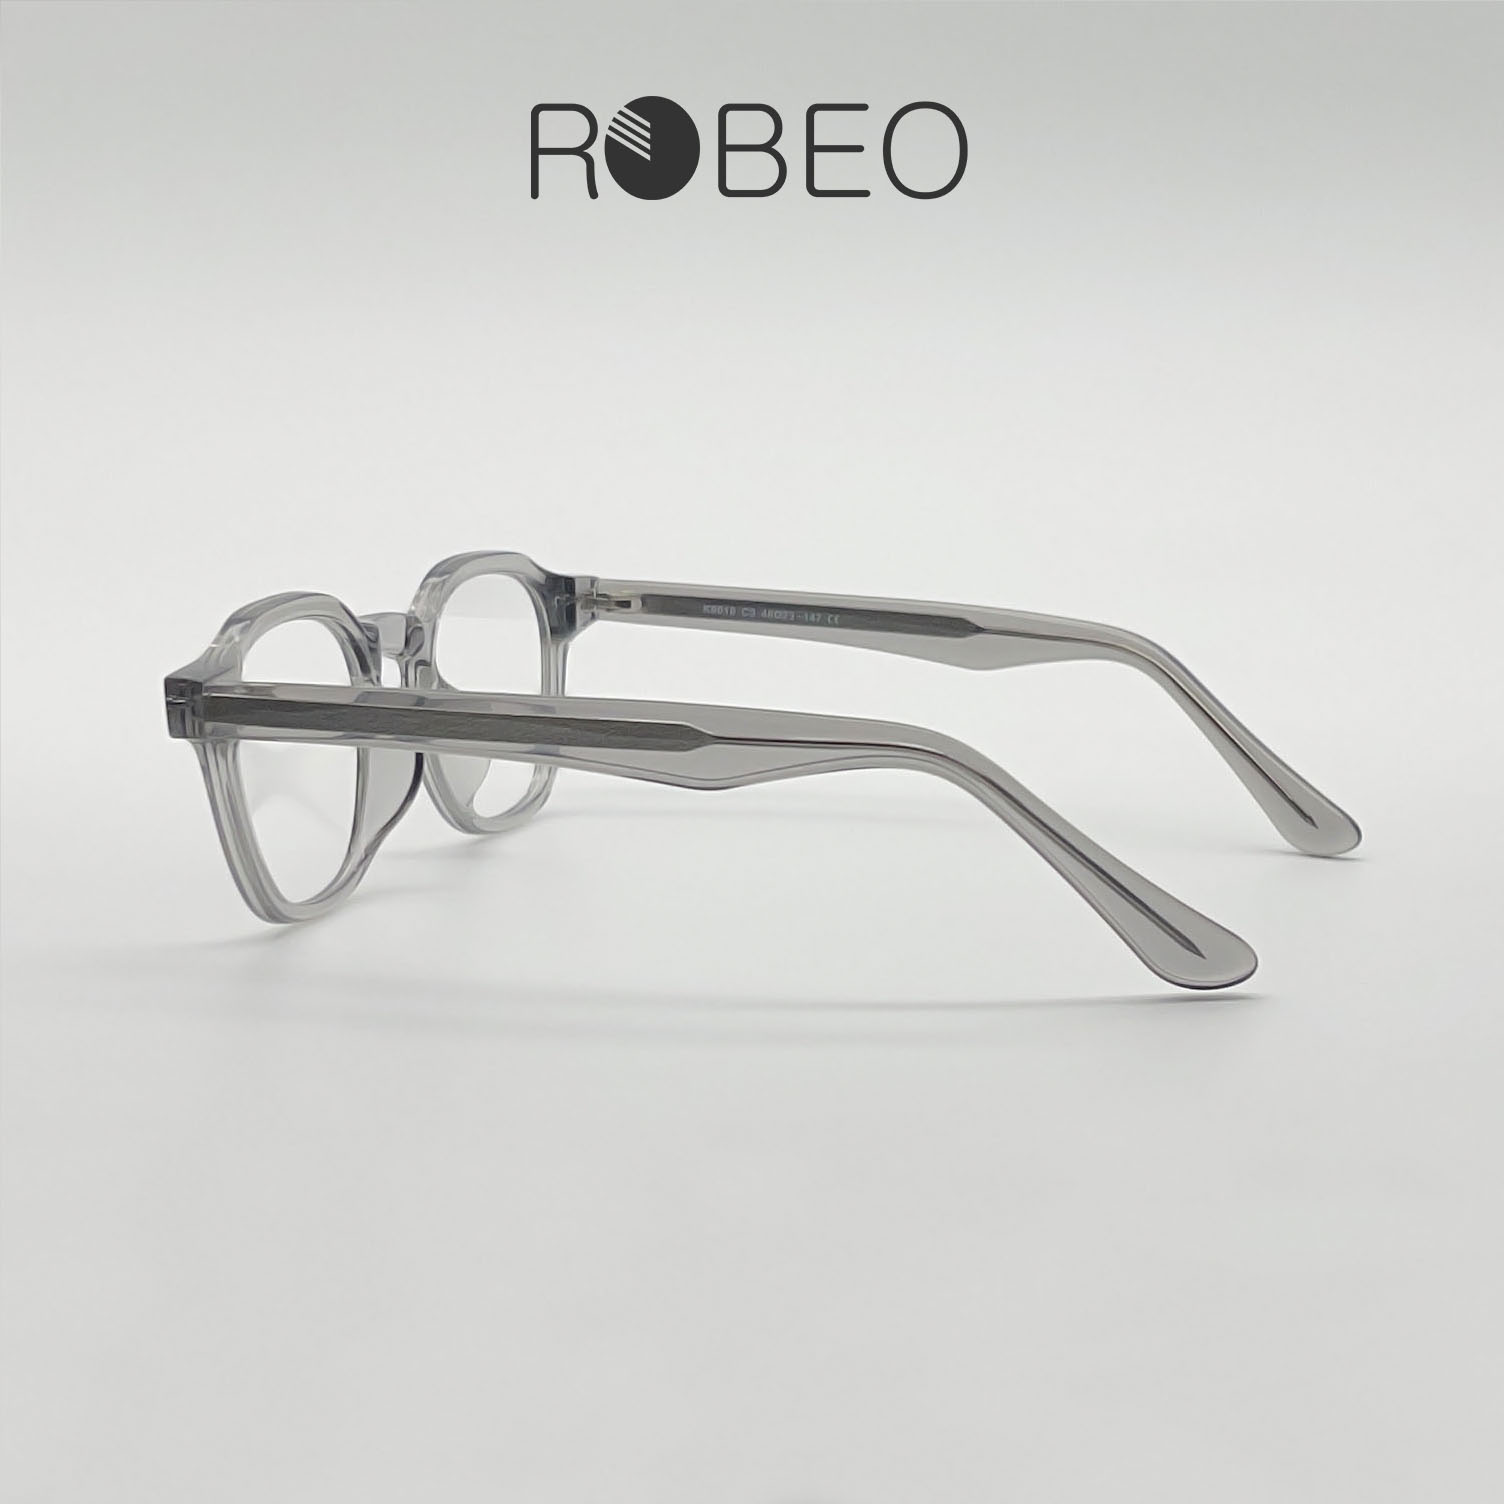 Gọng kính cận nam nữ ROBEO , gọng vuông đa giác mắt chống ánh sáng xanh - Fullbox